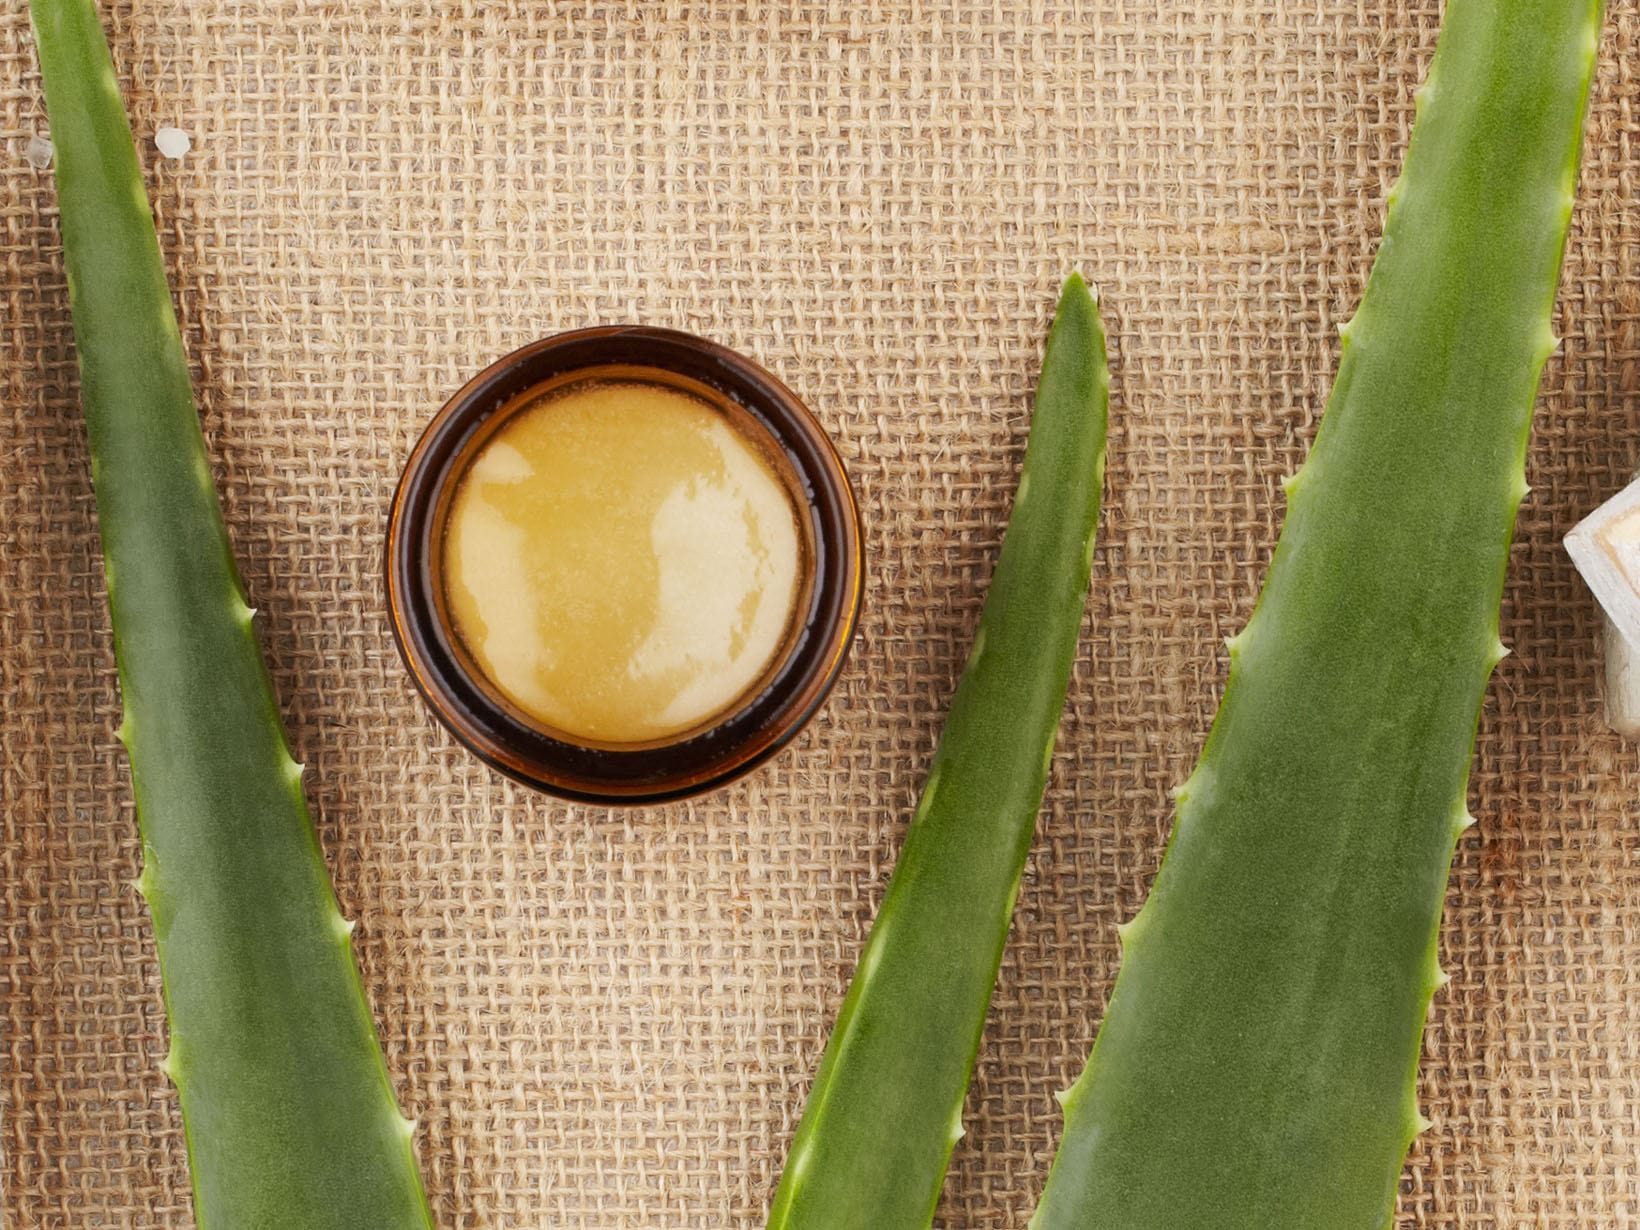 Gesichtsmaske selber machen mit Aloe vera und Honig